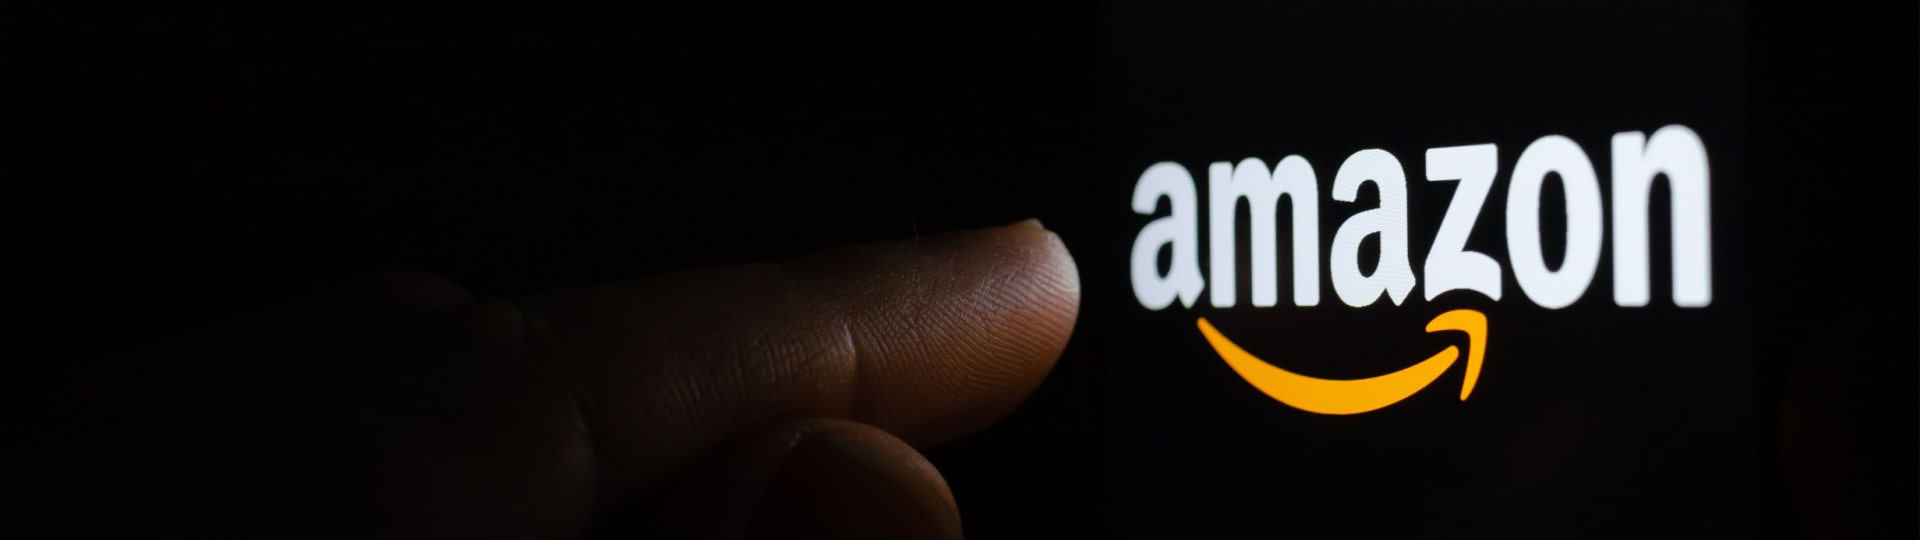 FTC hodlá podat antimonopolní žalobu na Amazon